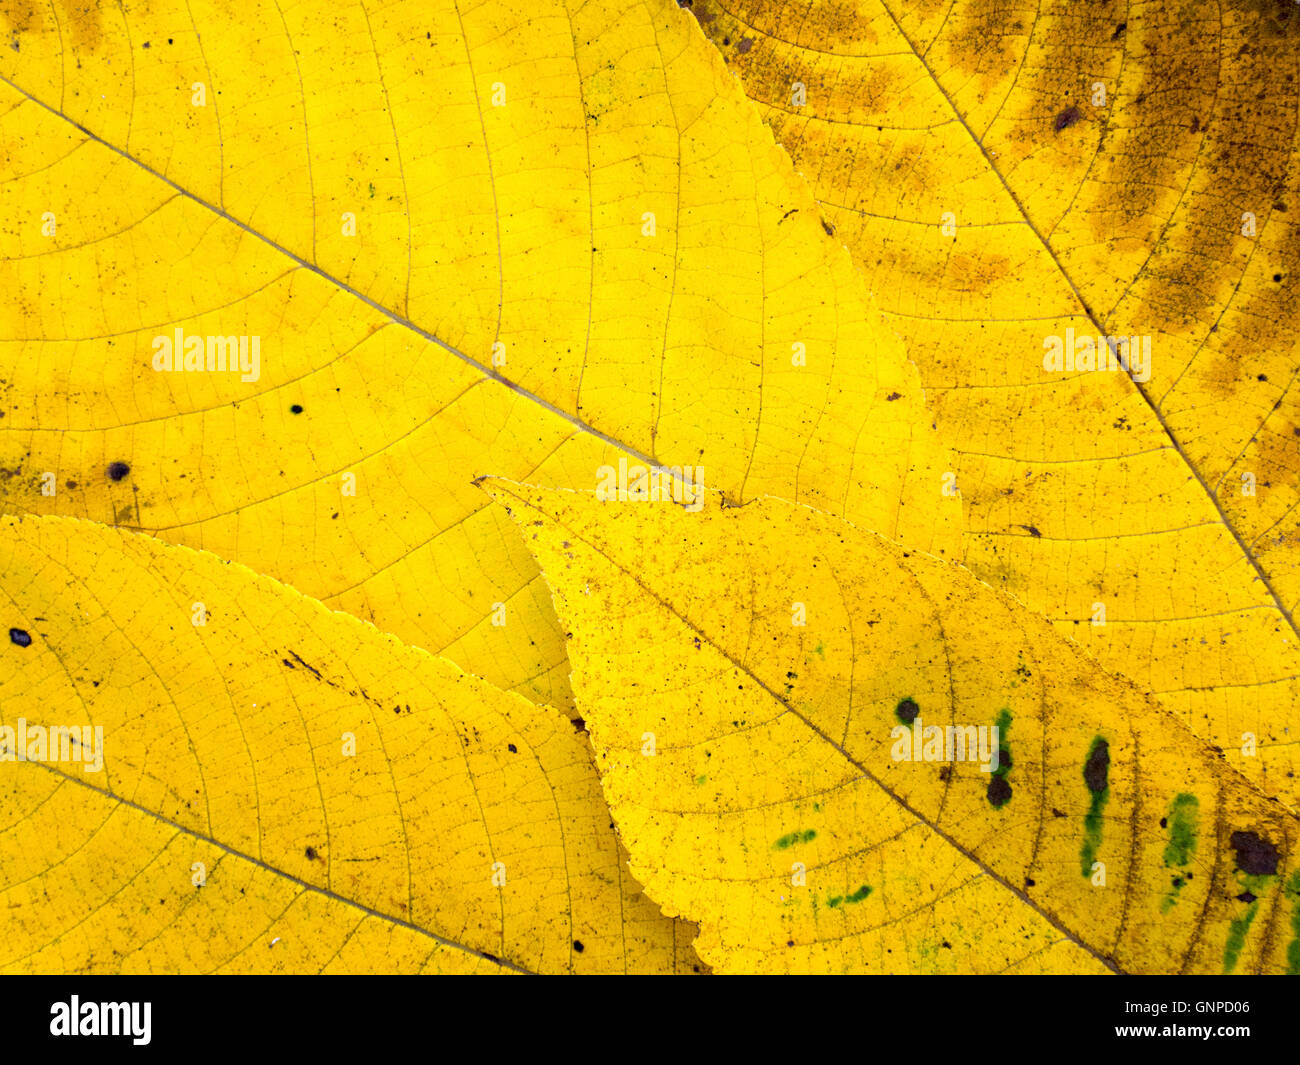 Brillante de color amarillo y marrón hojas caer con venas antecedentes Foto de stock